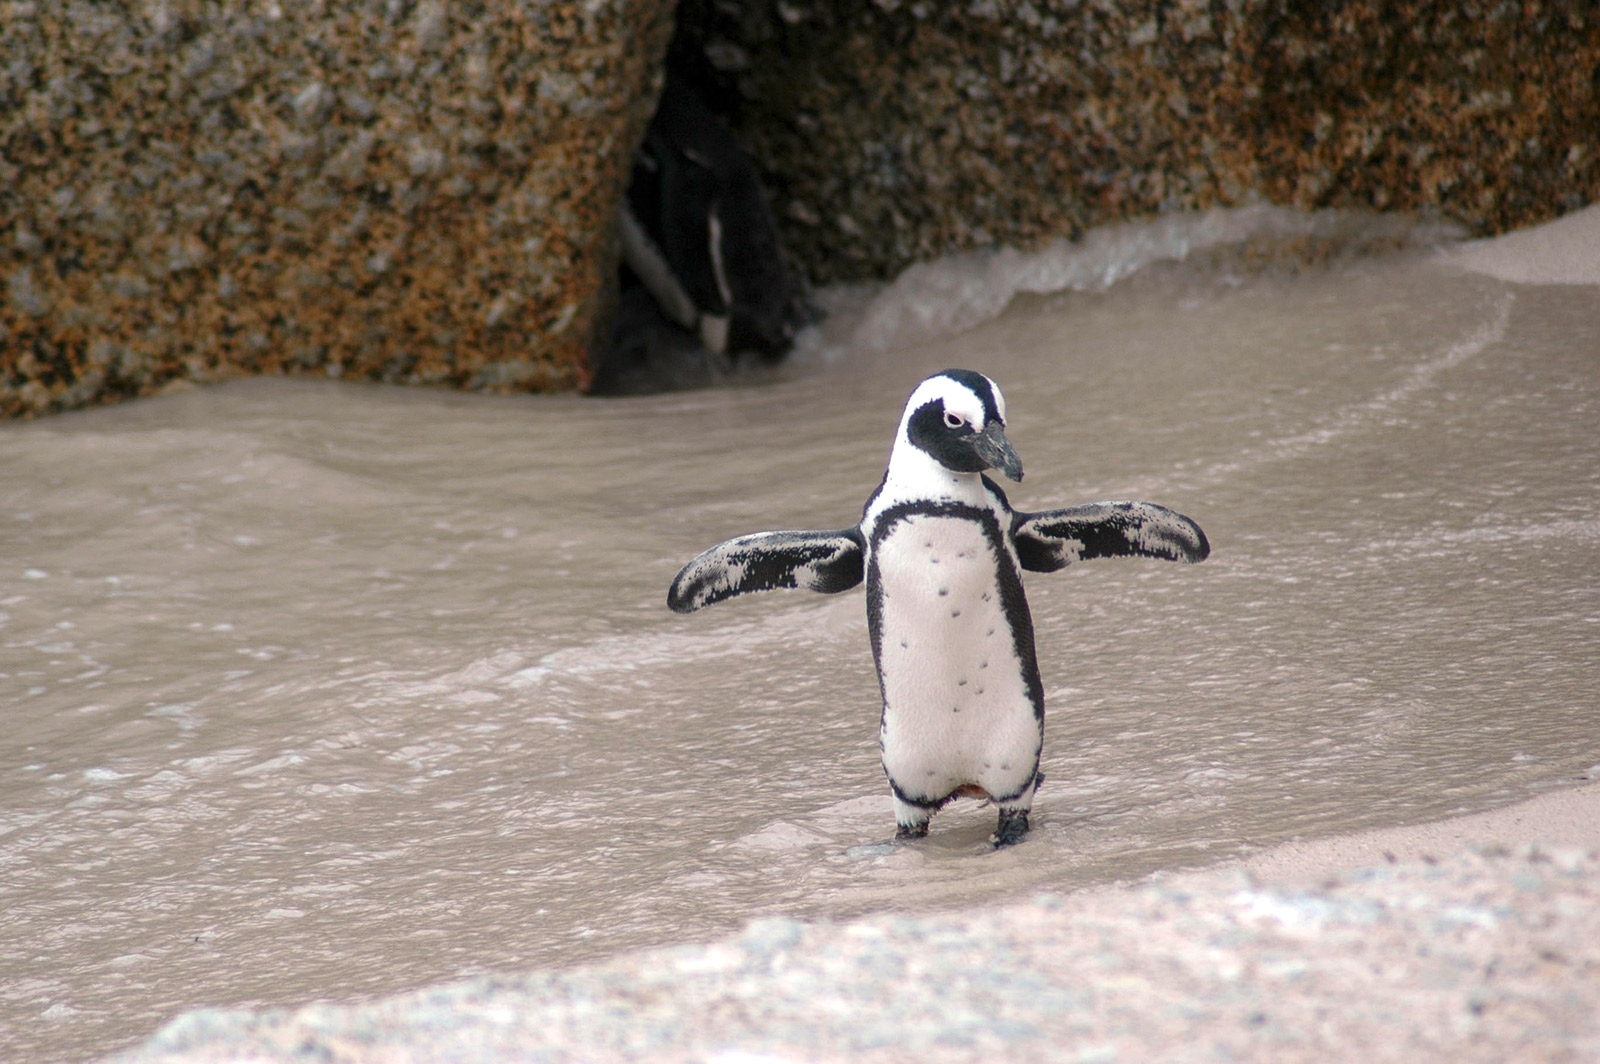 Magellan-Pinguin der mit offenen Flügeln an einem Strand entlangläuft